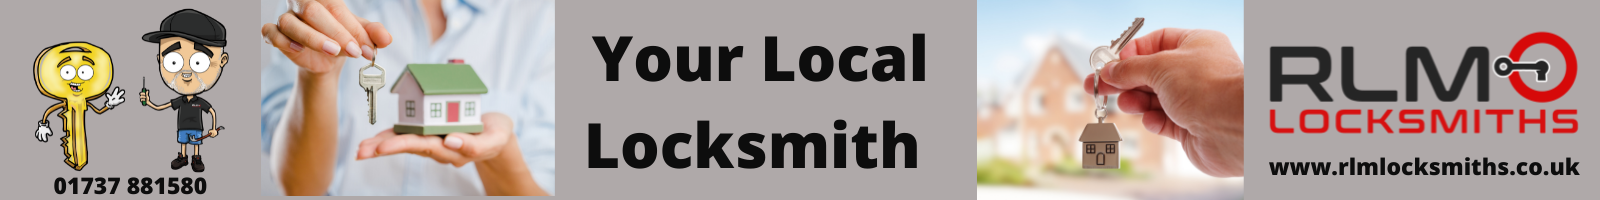 RLM Local Surrey Locksmiths